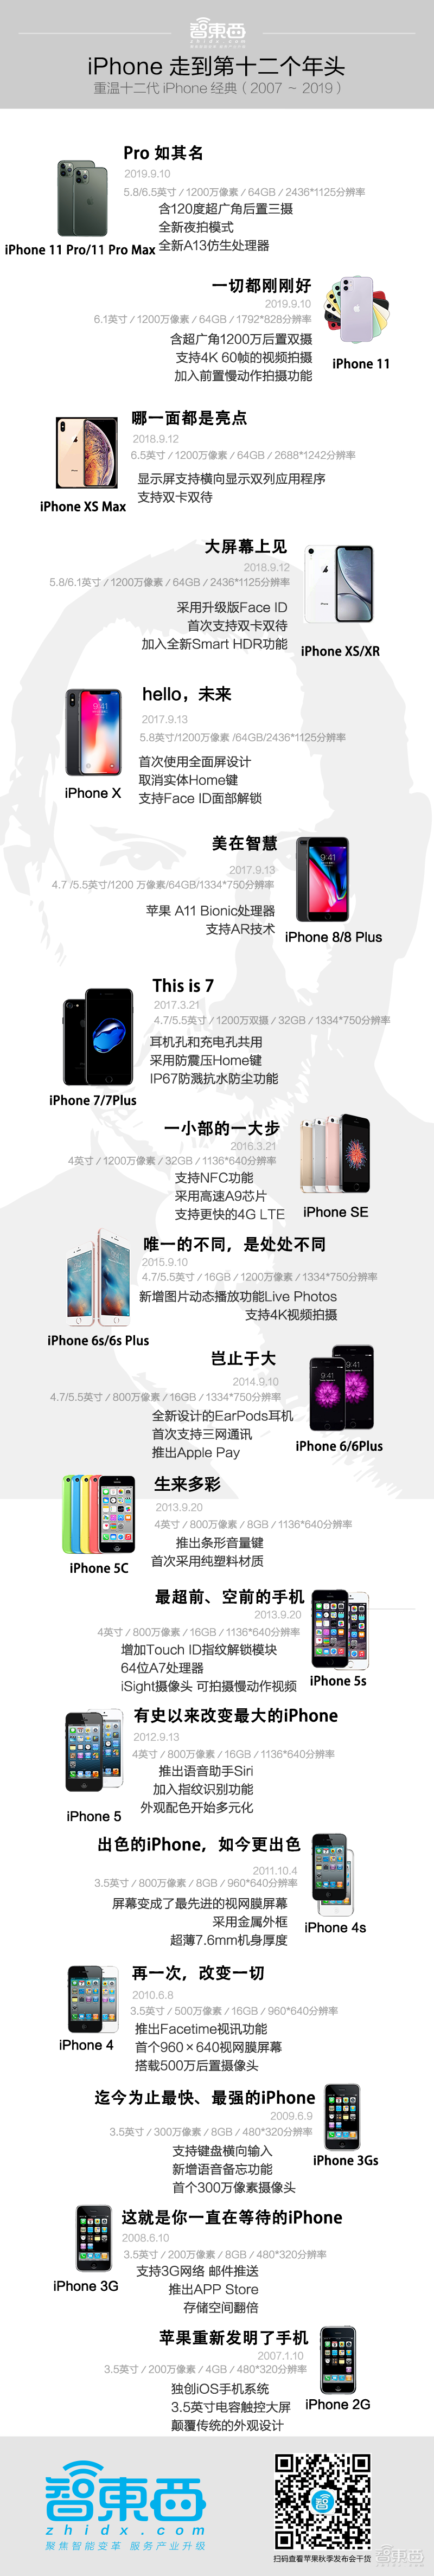 浴霸三摄iphone11发布 价格狂降千元 现场叫板华为芯片 智东西